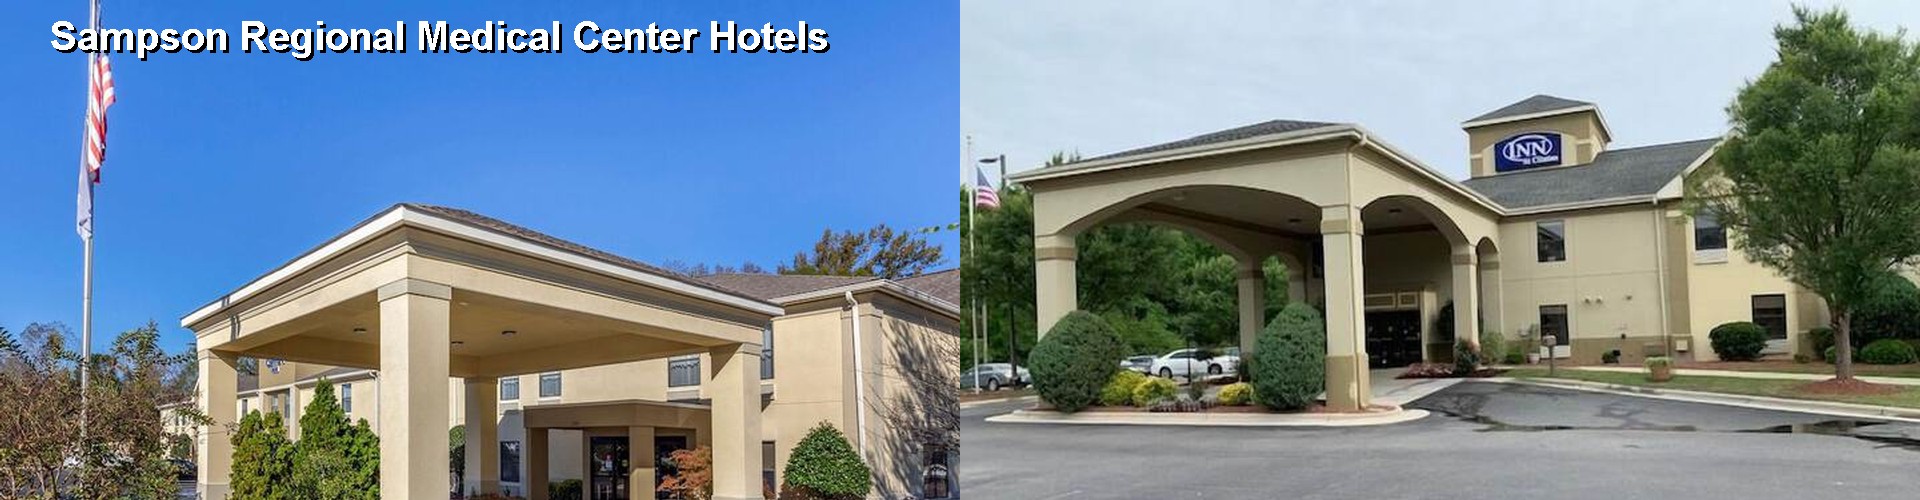 4 Best Hotels near Sampson Regional Medical Center